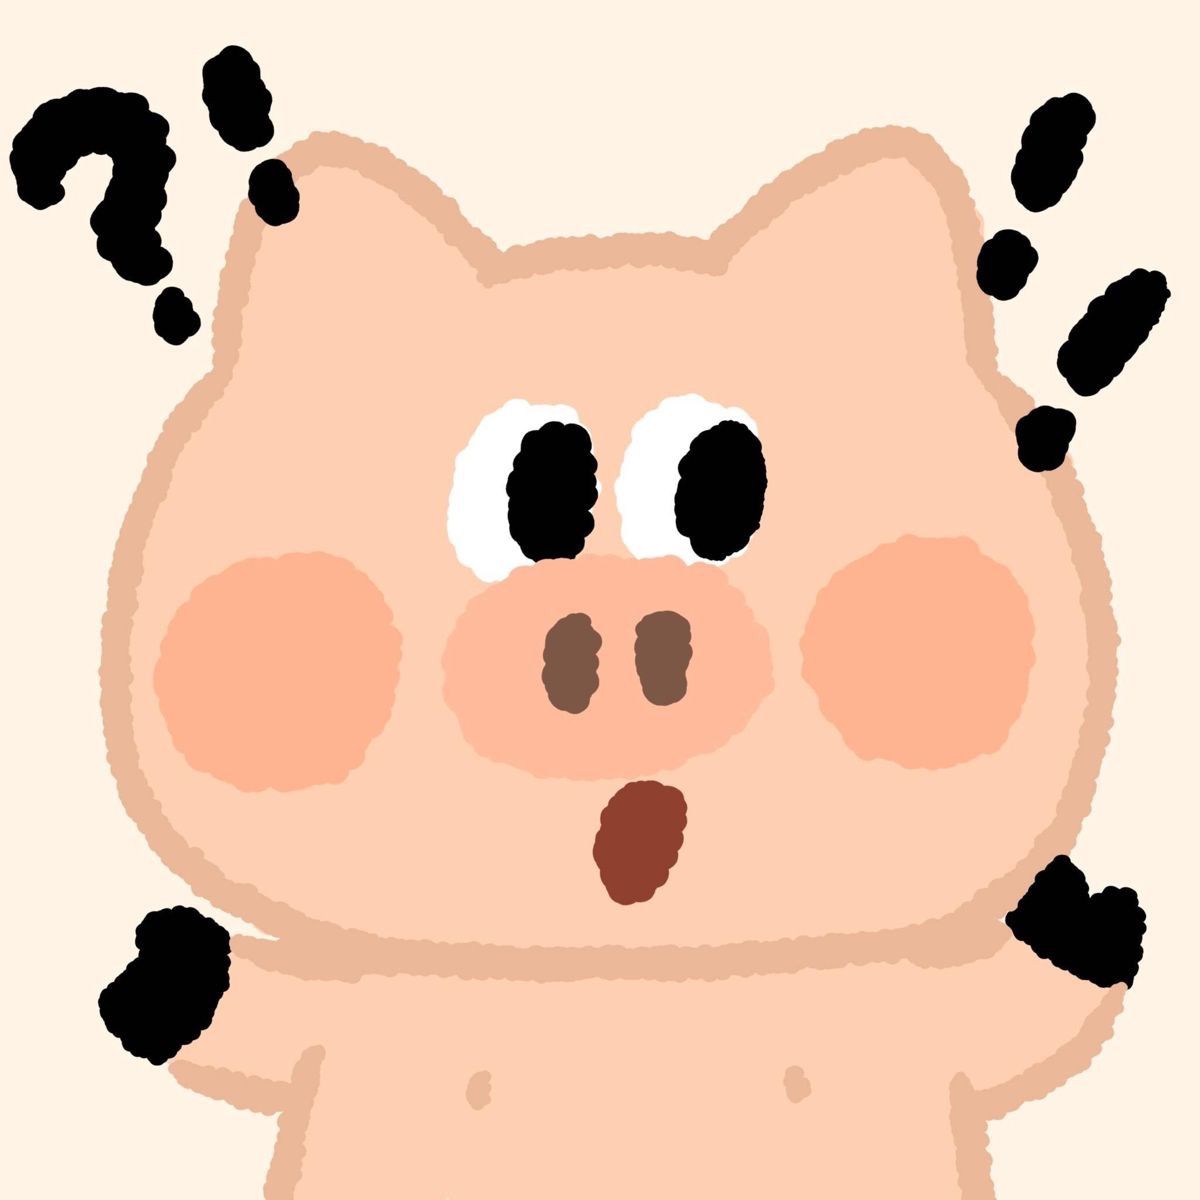 Hình Vẽ Chú Lợn Bên Dấu Hỏi Màu đen Ảnh Hỏi Chấm Meme (23)